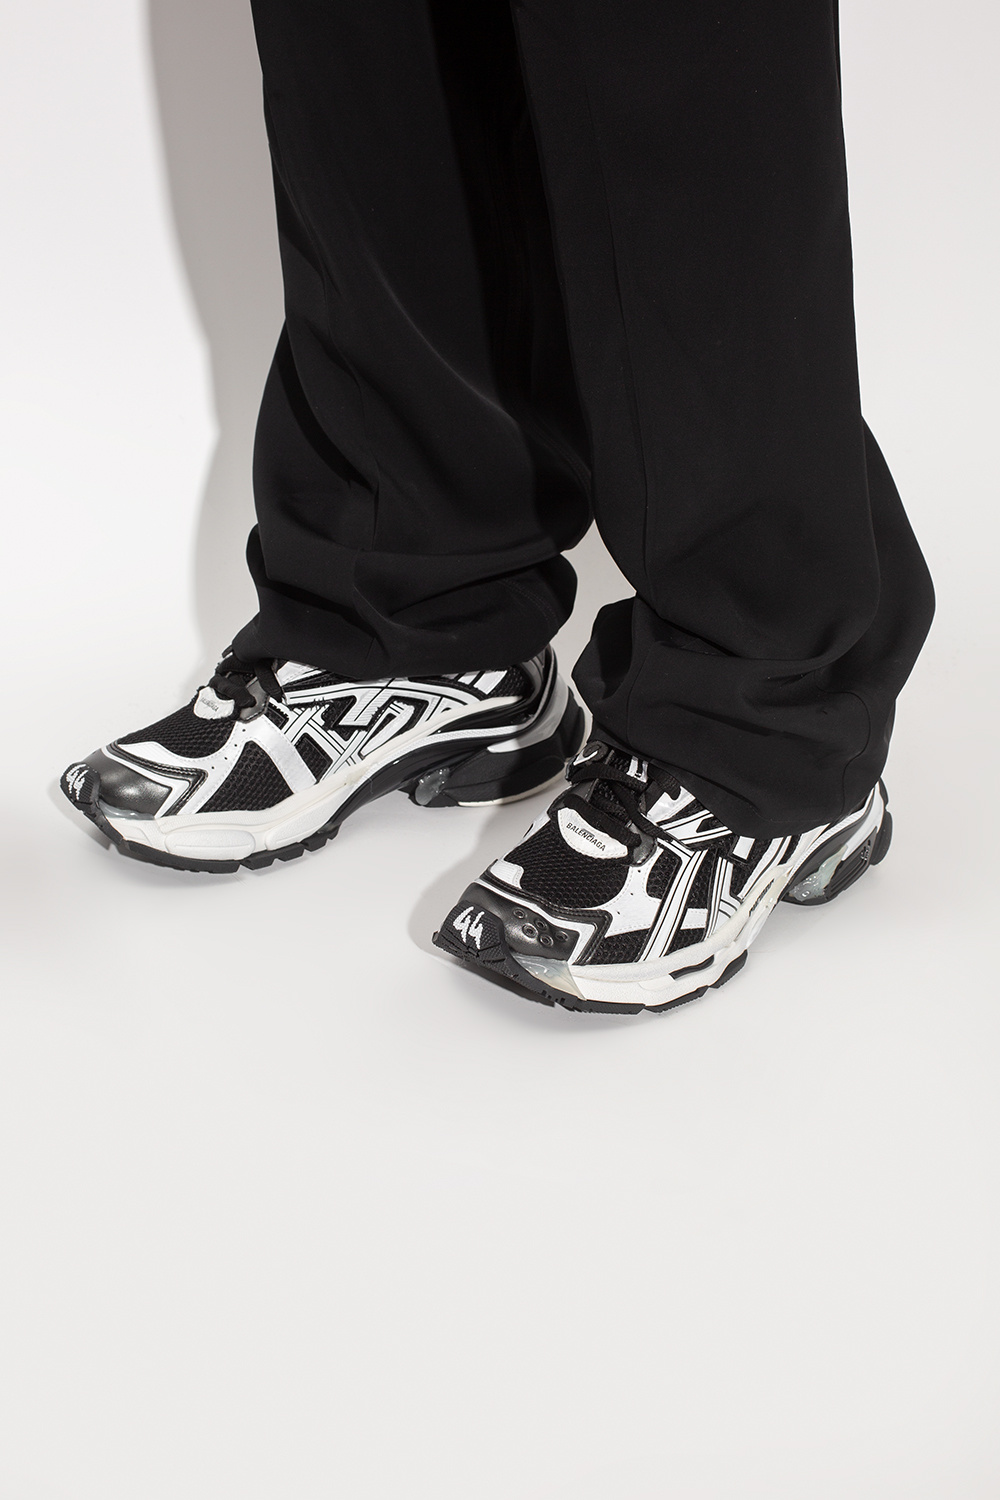 Balenciaga ‘Runner’ sneakers | Men's Shoes | Vitkac